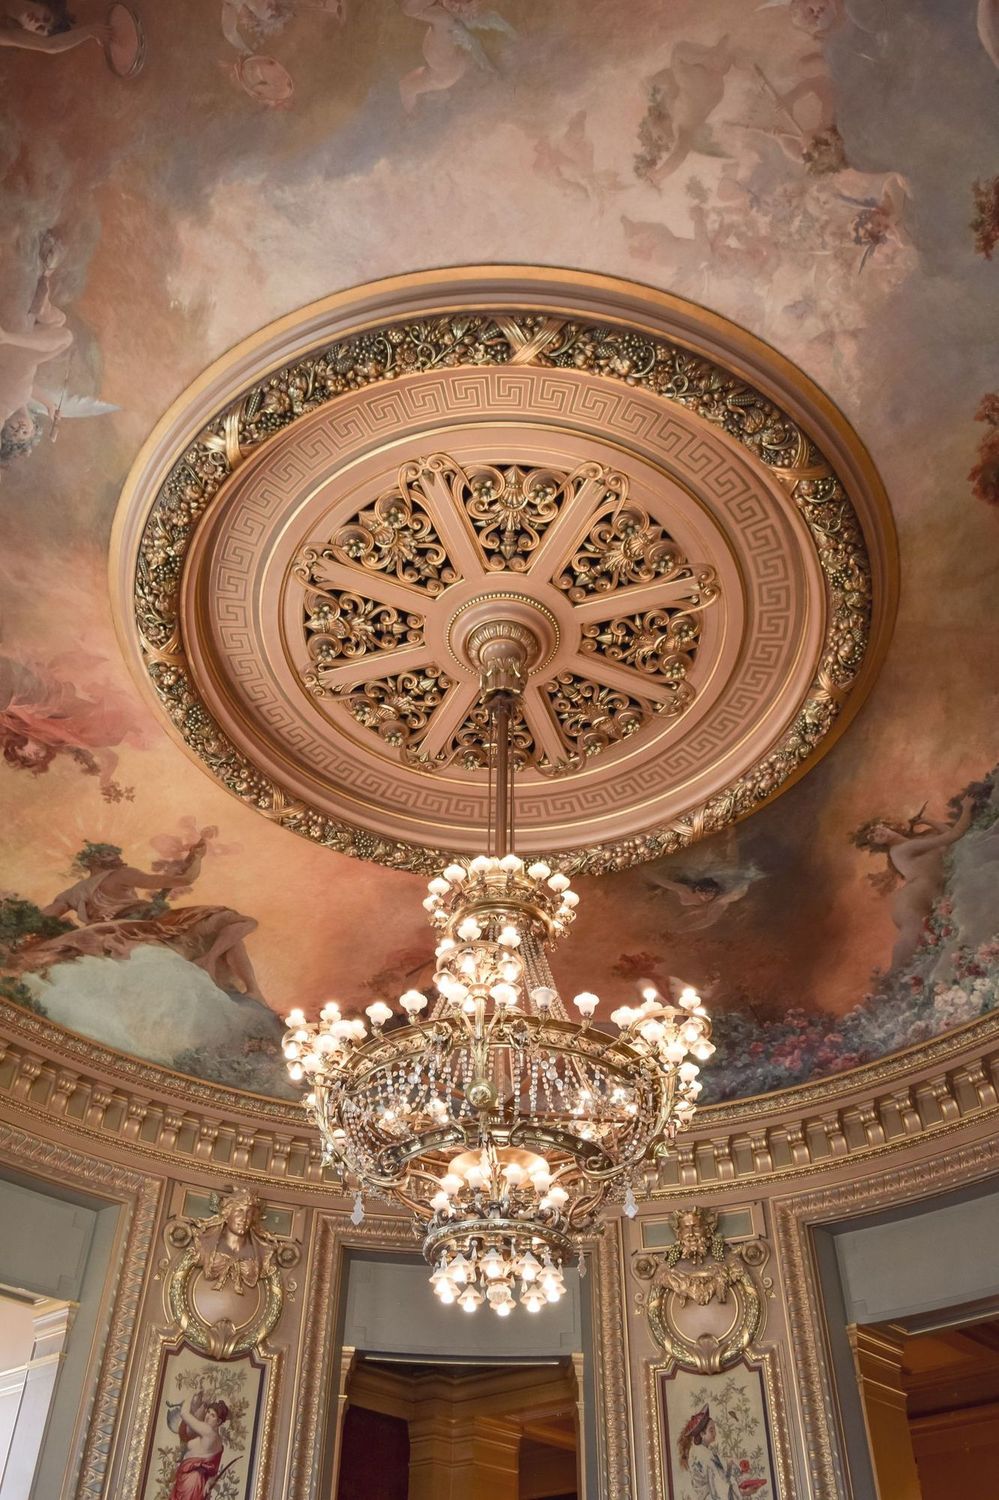 Chandelier in Round Room at the Palais Garnier Paris